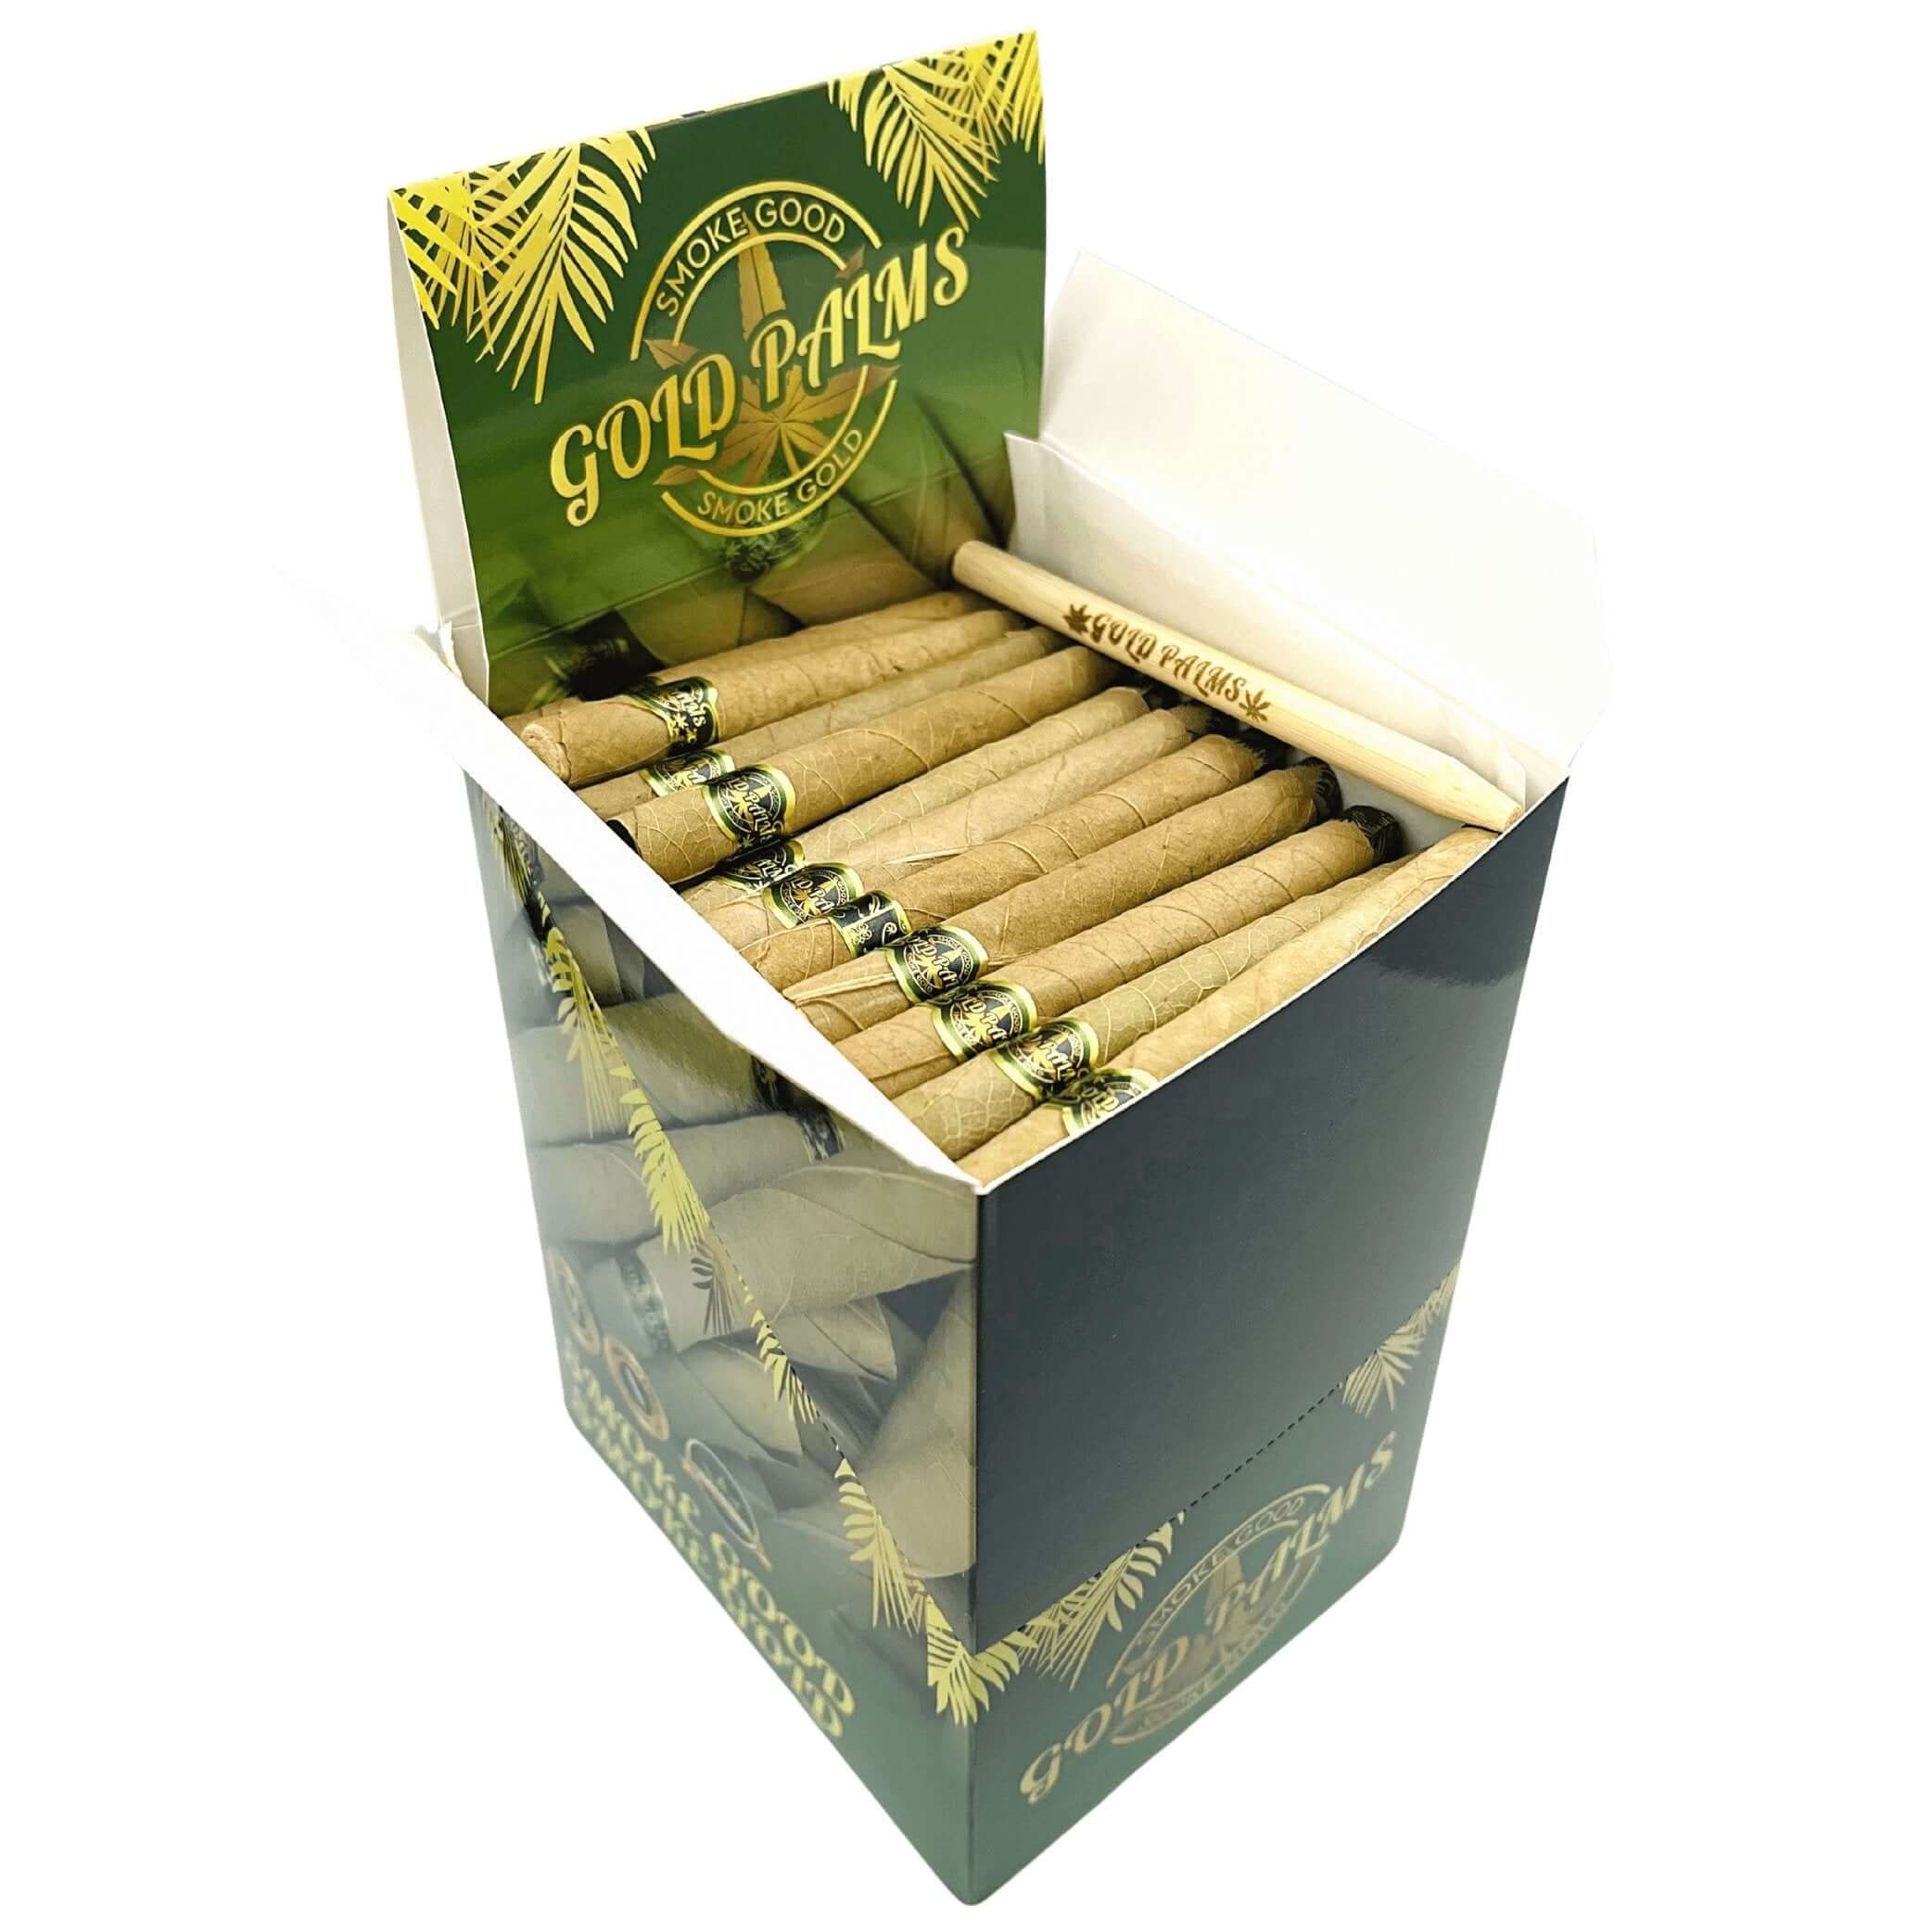 Überblick über die gefüllte Gold Palms Bulk Box, zeigt über 100 sorgfältig angeordnete Blunt Wraps.